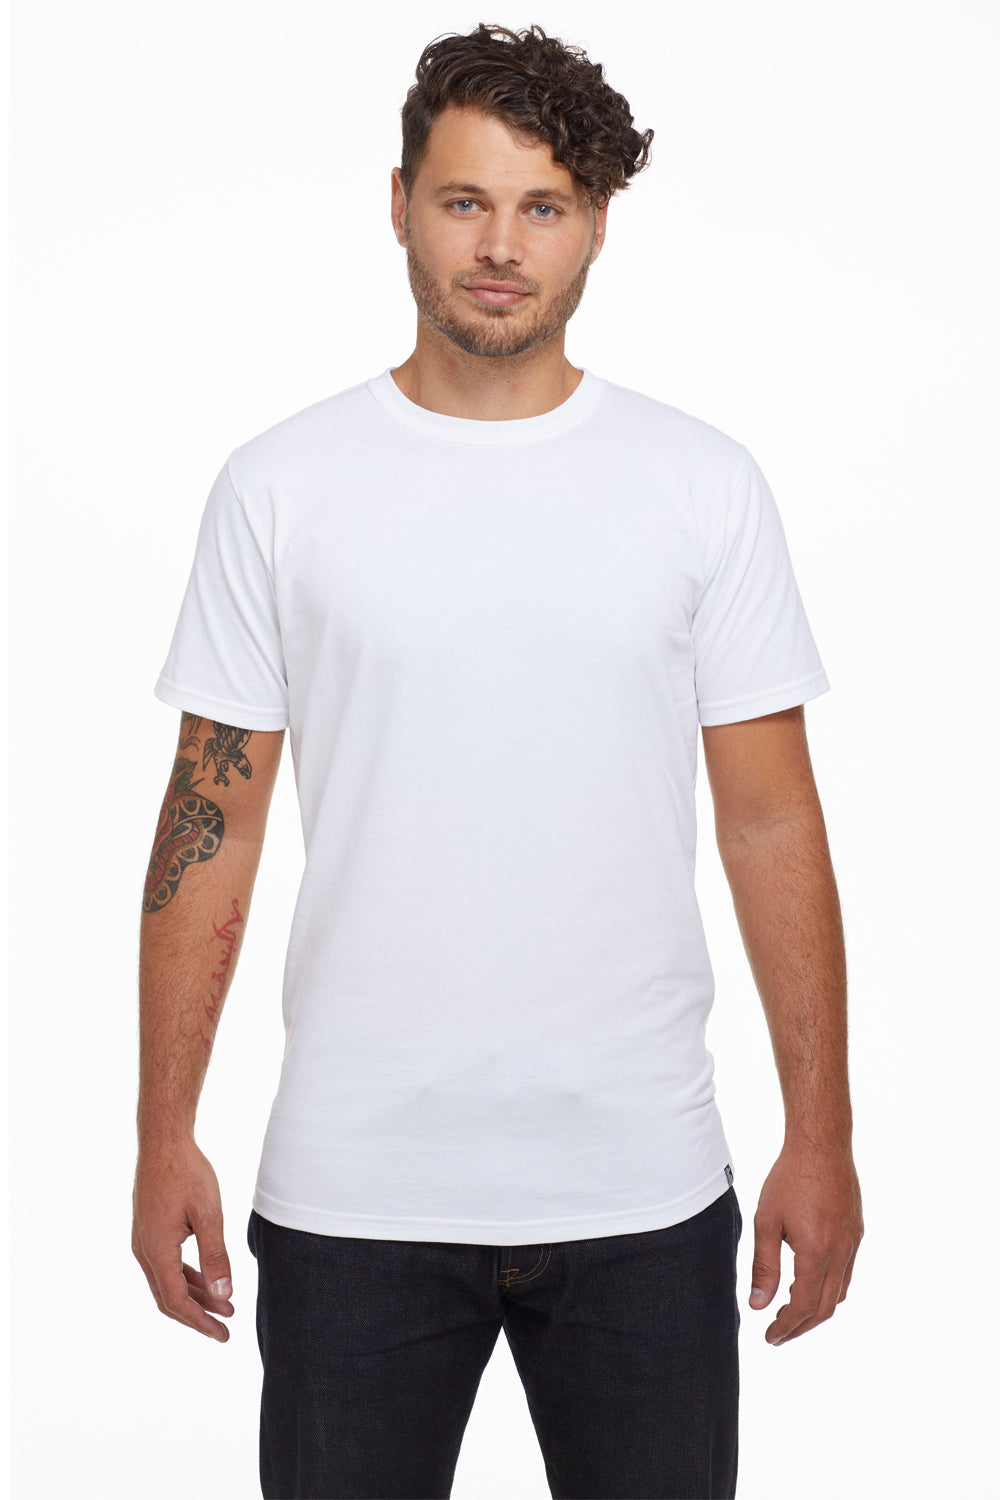 Econscious EC1007U Mens USA Made Short Sleeve Crewneck T-Shirt White Front